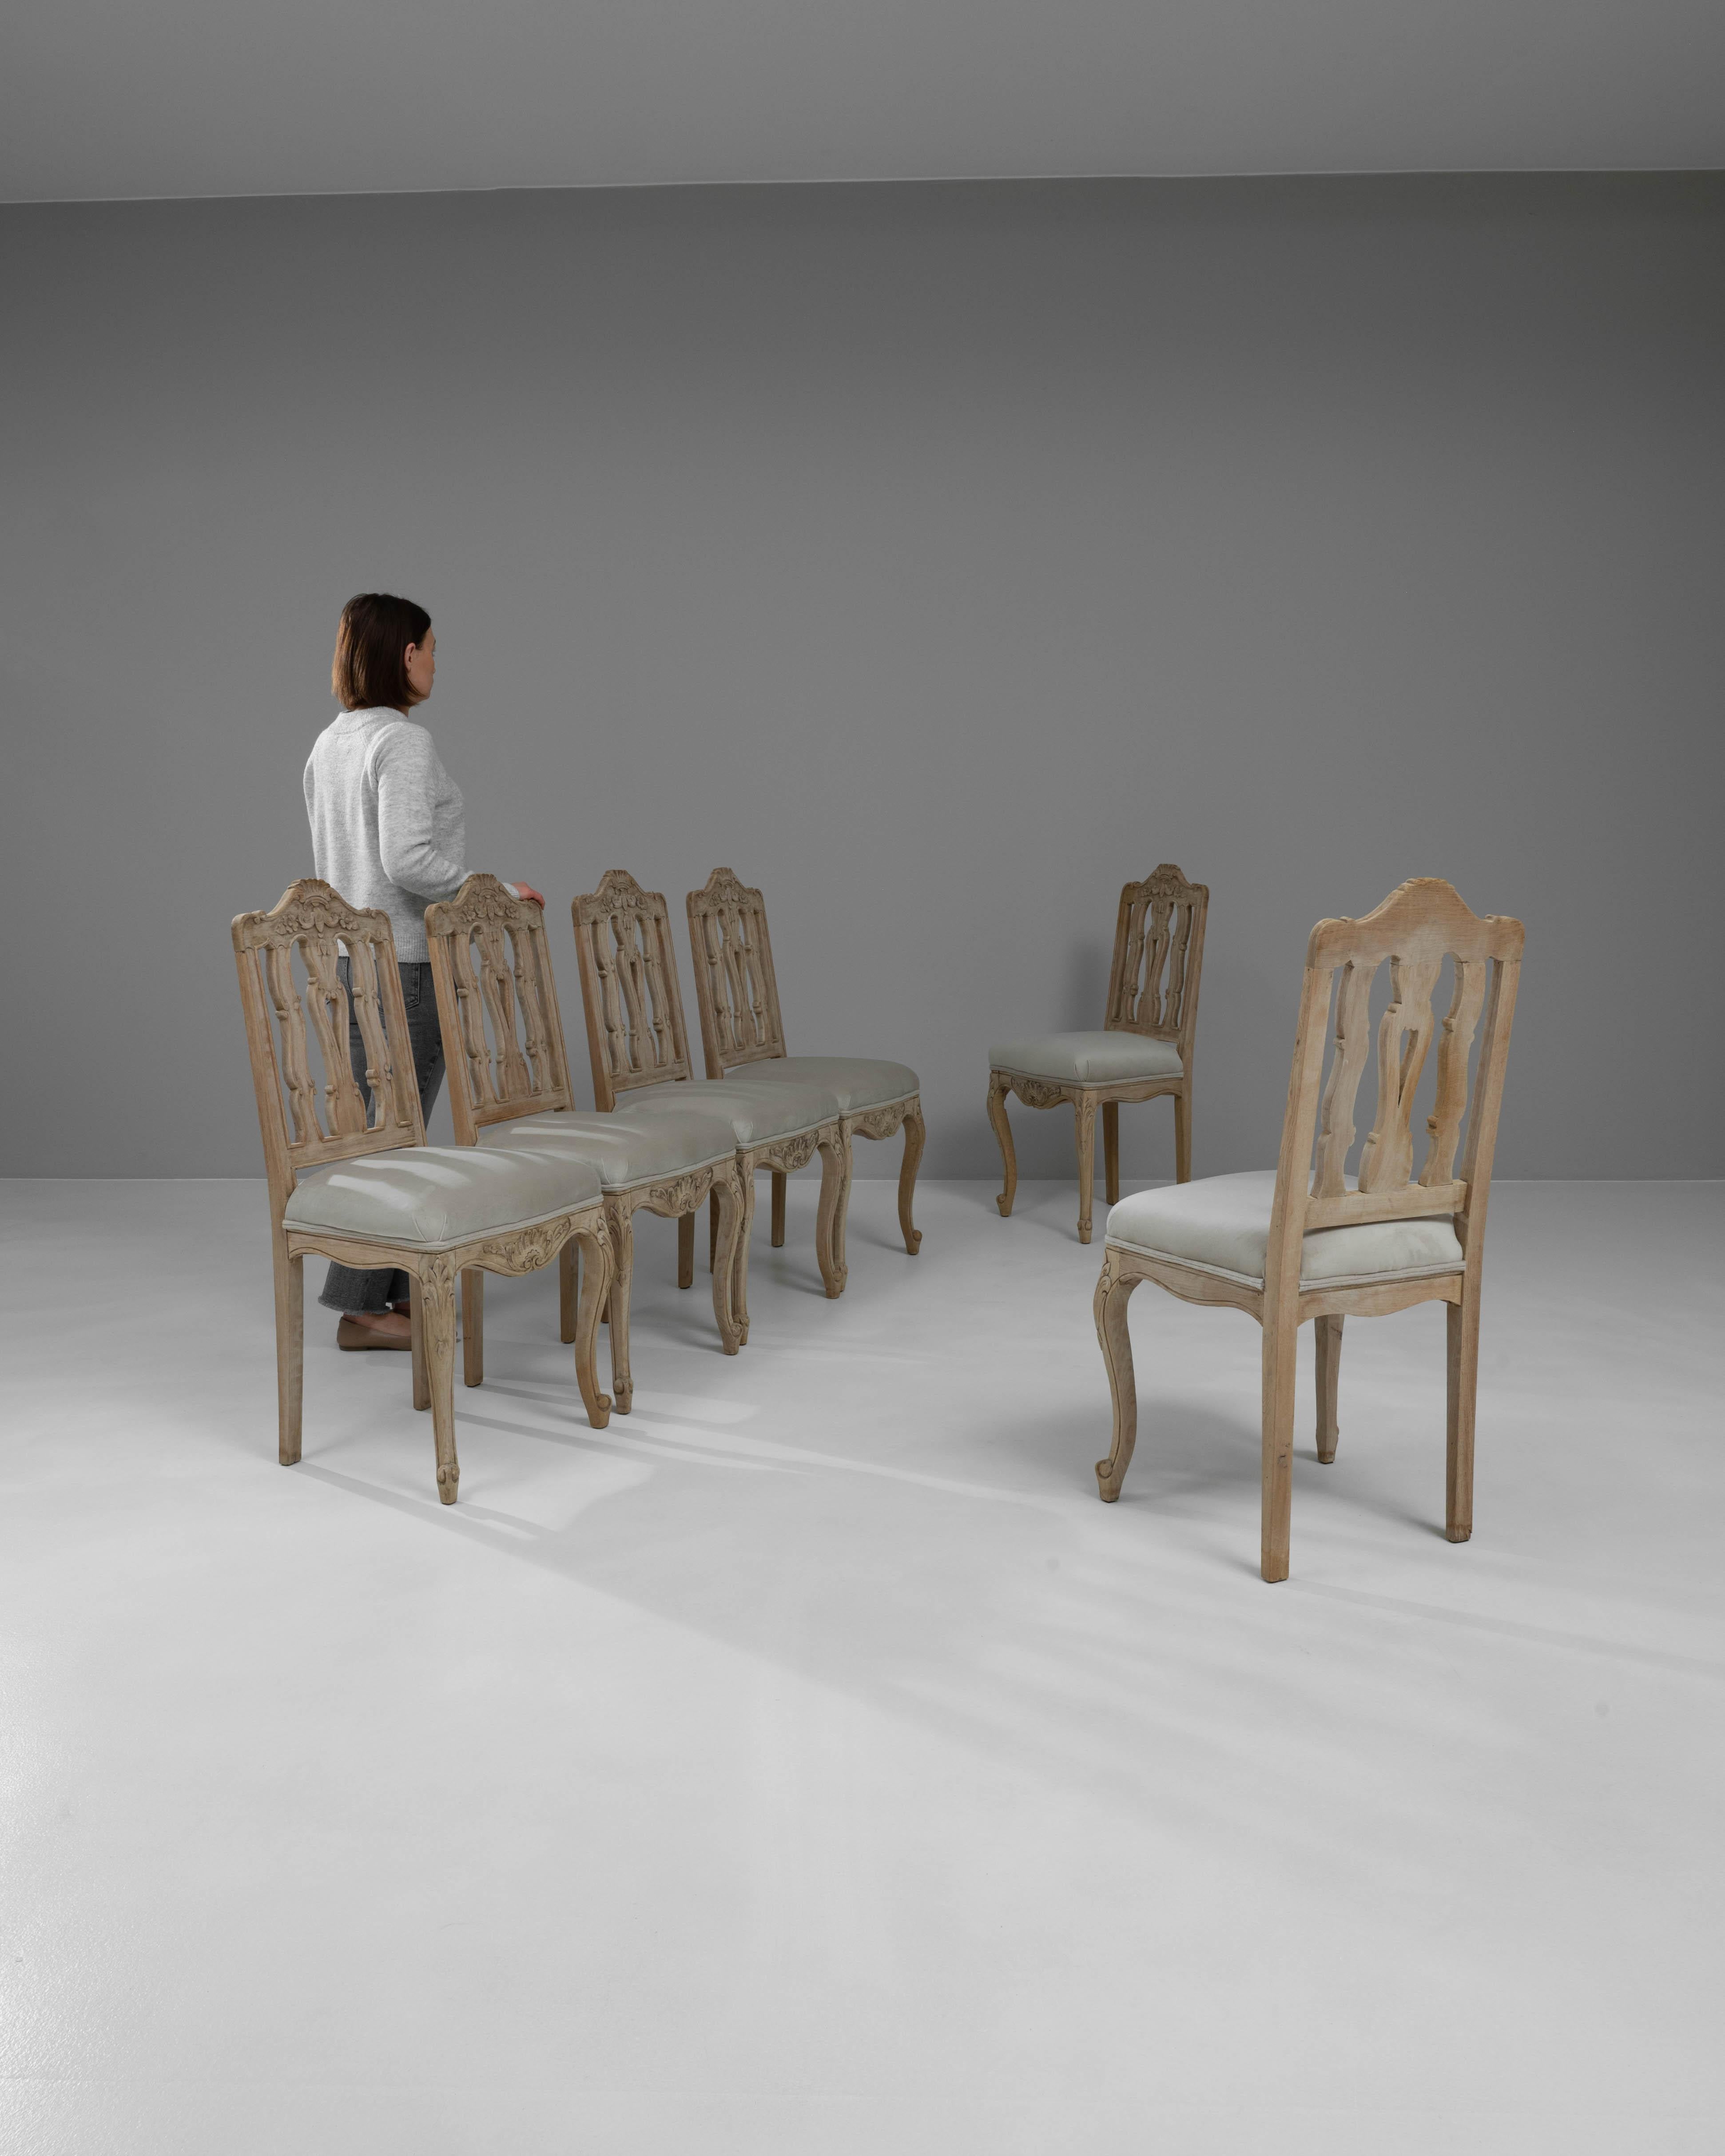 Erhöhen Sie Ihr Esserlebnis mit diesem exquisiten Satz von sechs französischen Esszimmerstühlen aus gebleichter Eiche aus dem 20. Jahrhundert, wobei jedes Stück ein Zeugnis für klassisches Design und raffinierte Handwerkskunst ist. Diese Stühle